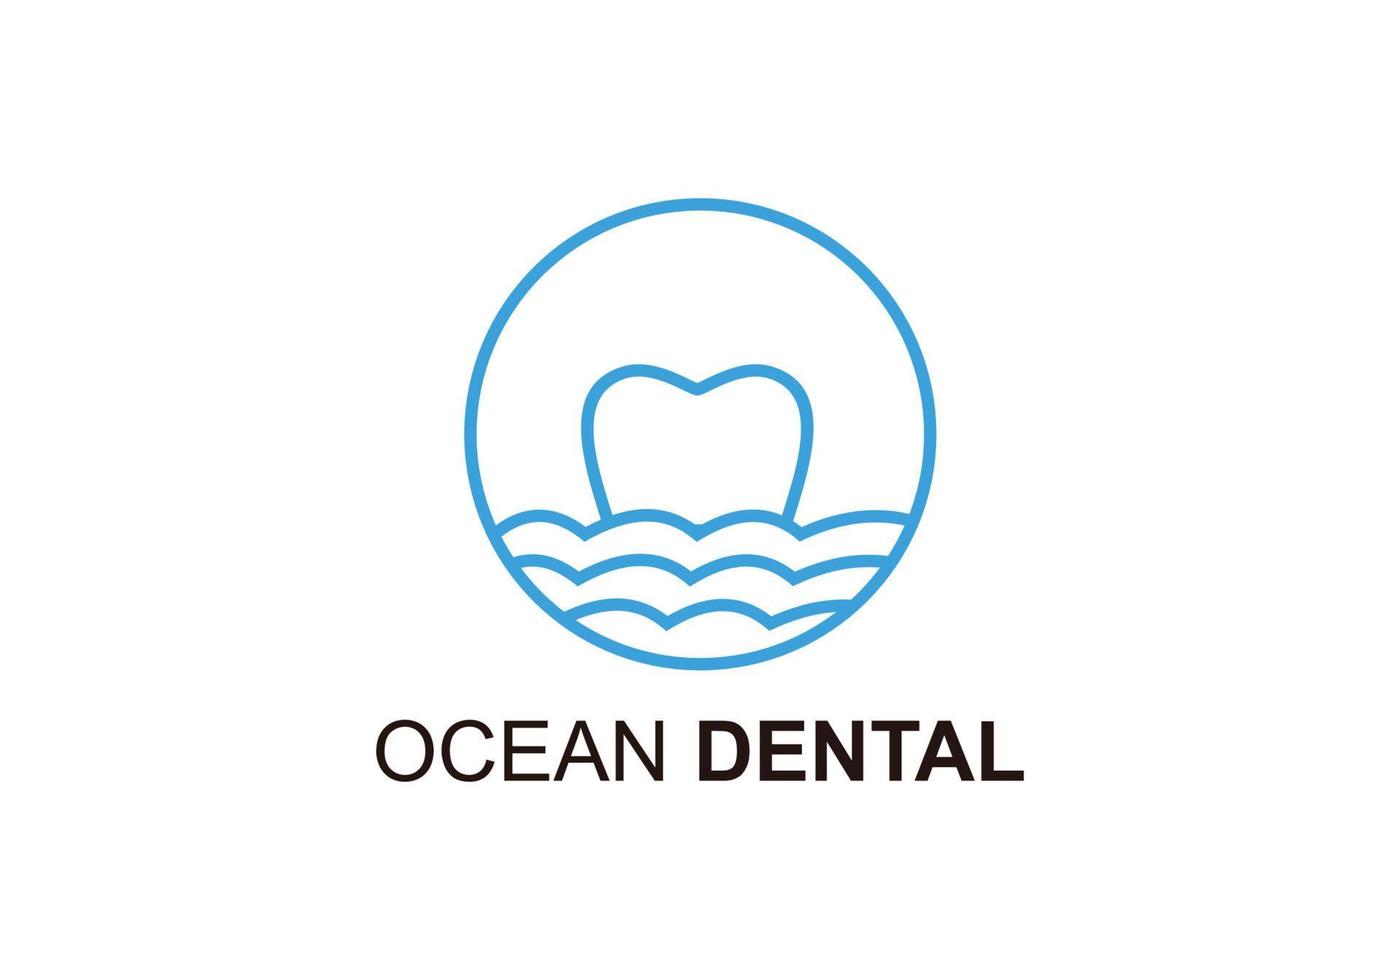 symbol icon Illustration Of ocean dental inspiration vector